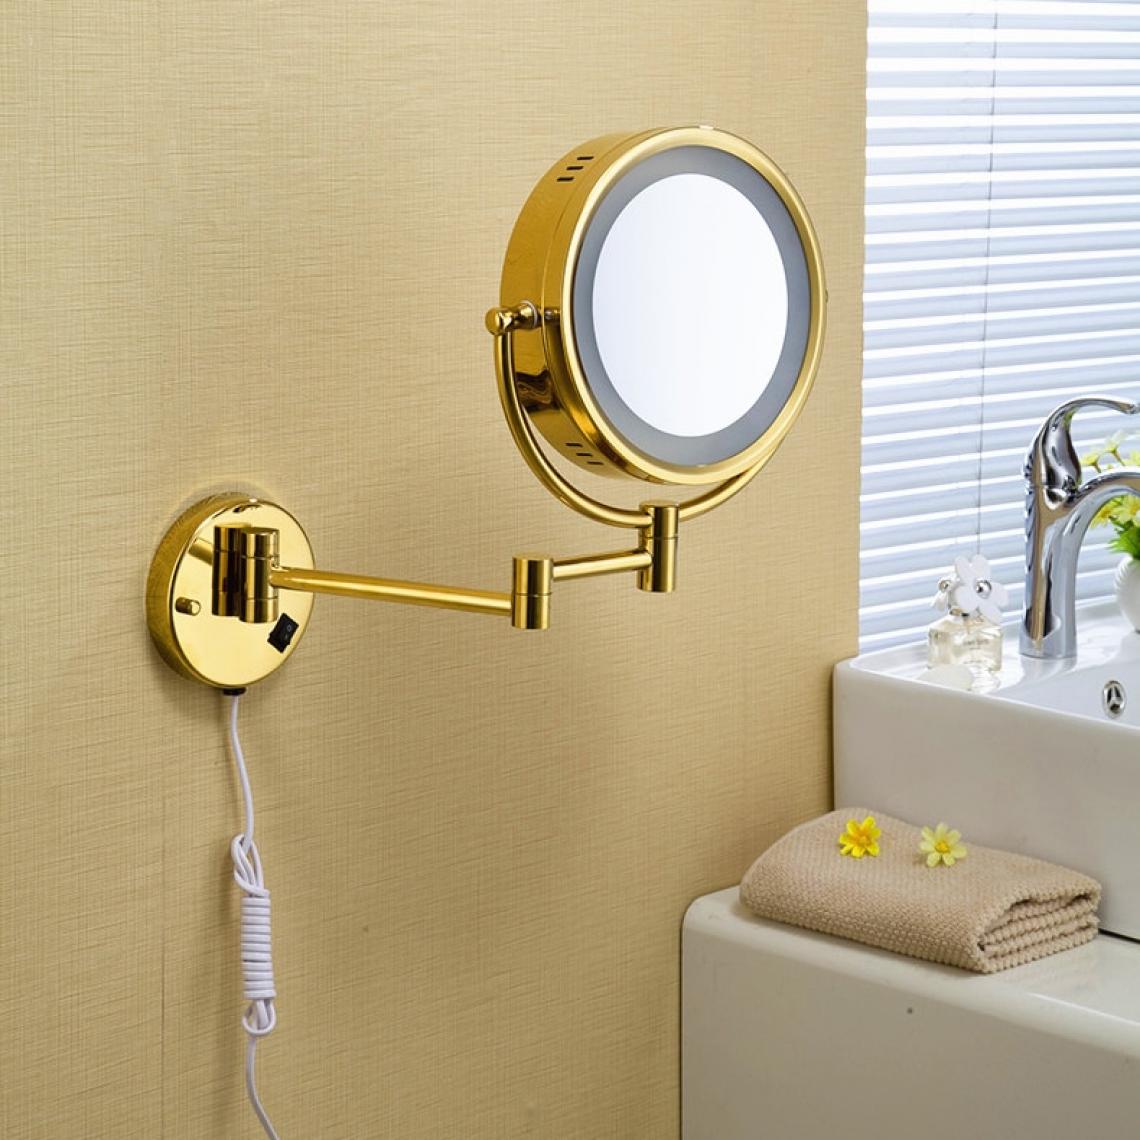 Universal - Miroir de salle de bains pliant doré, miroir de salle de bains, miroir d'agrandissement, miroir de salle de bains doré,(Or) - Miroir de salle de bain